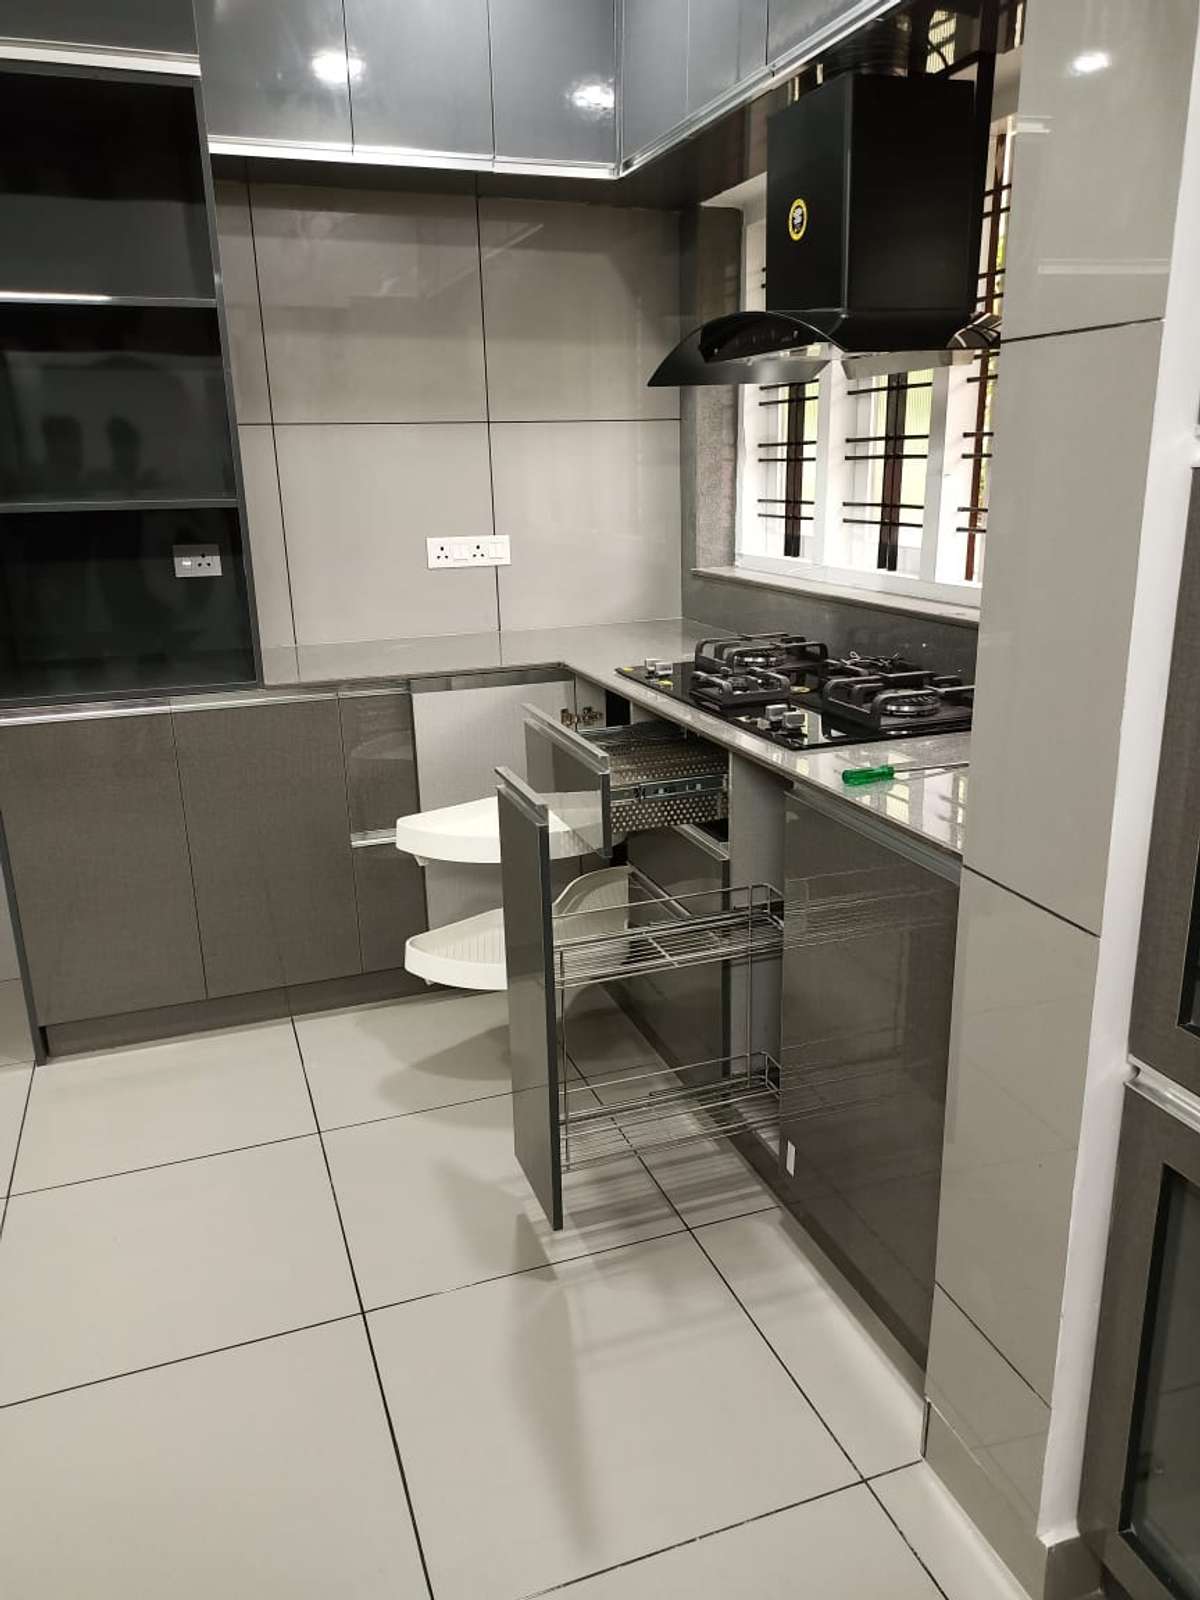 Kitchen, Storage Designs by Interior Designer team iconz, Idukki | Kolo